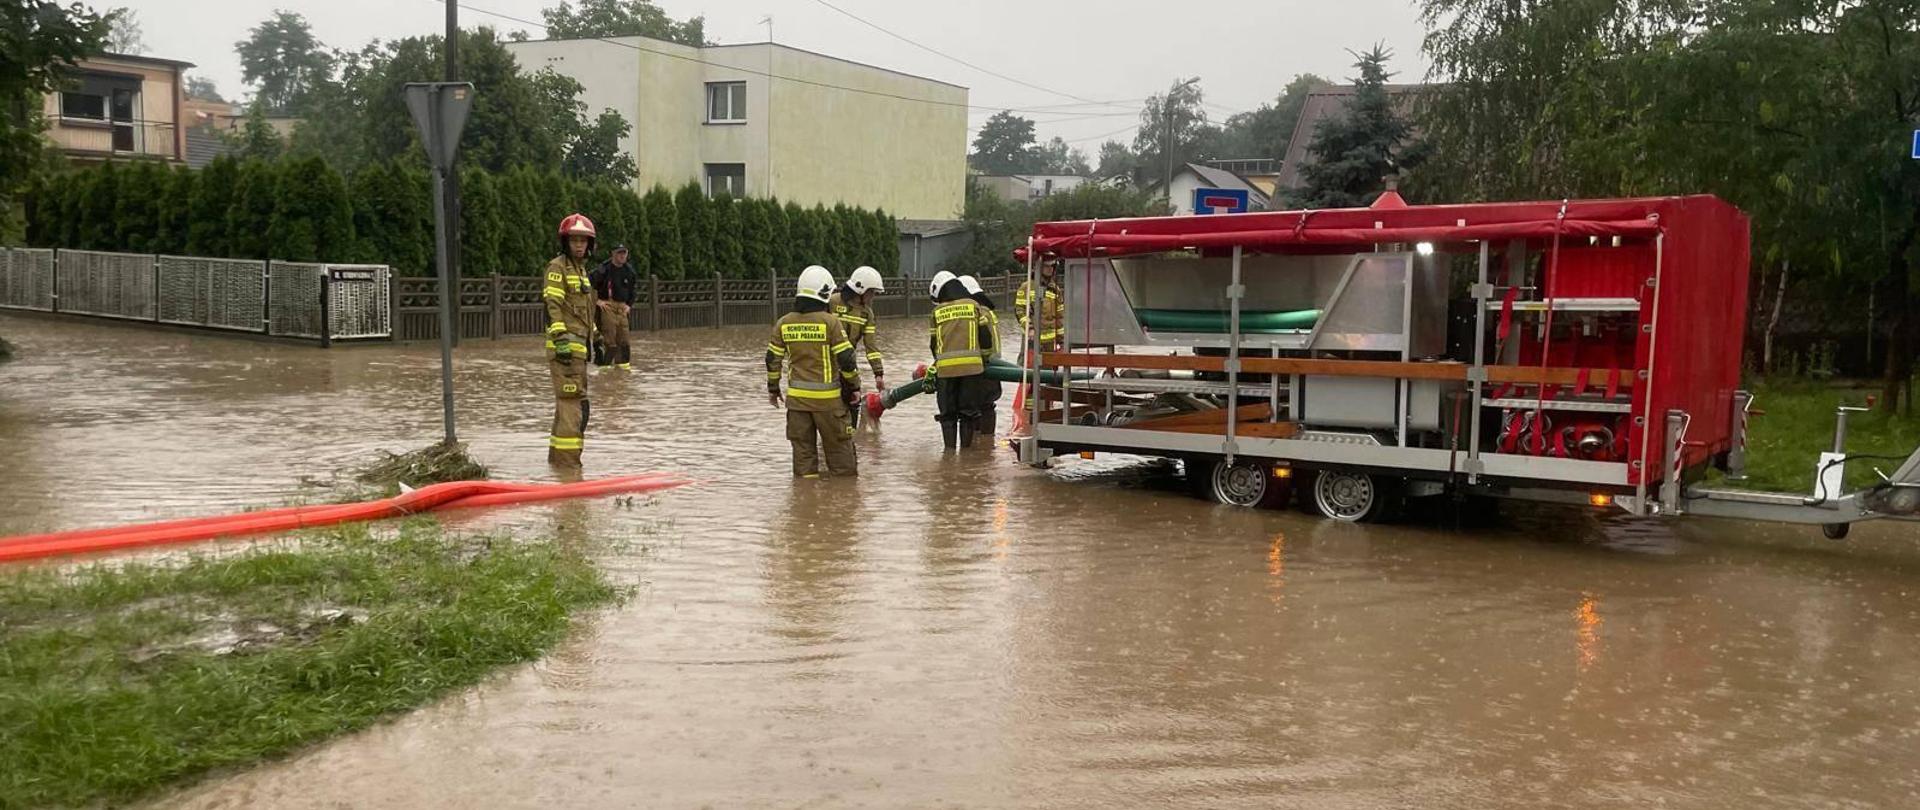 działania ratownicze prowadzone w zwiazku z ulewami w powiecie pleszewskim, pompowanie wody i zalane posesje